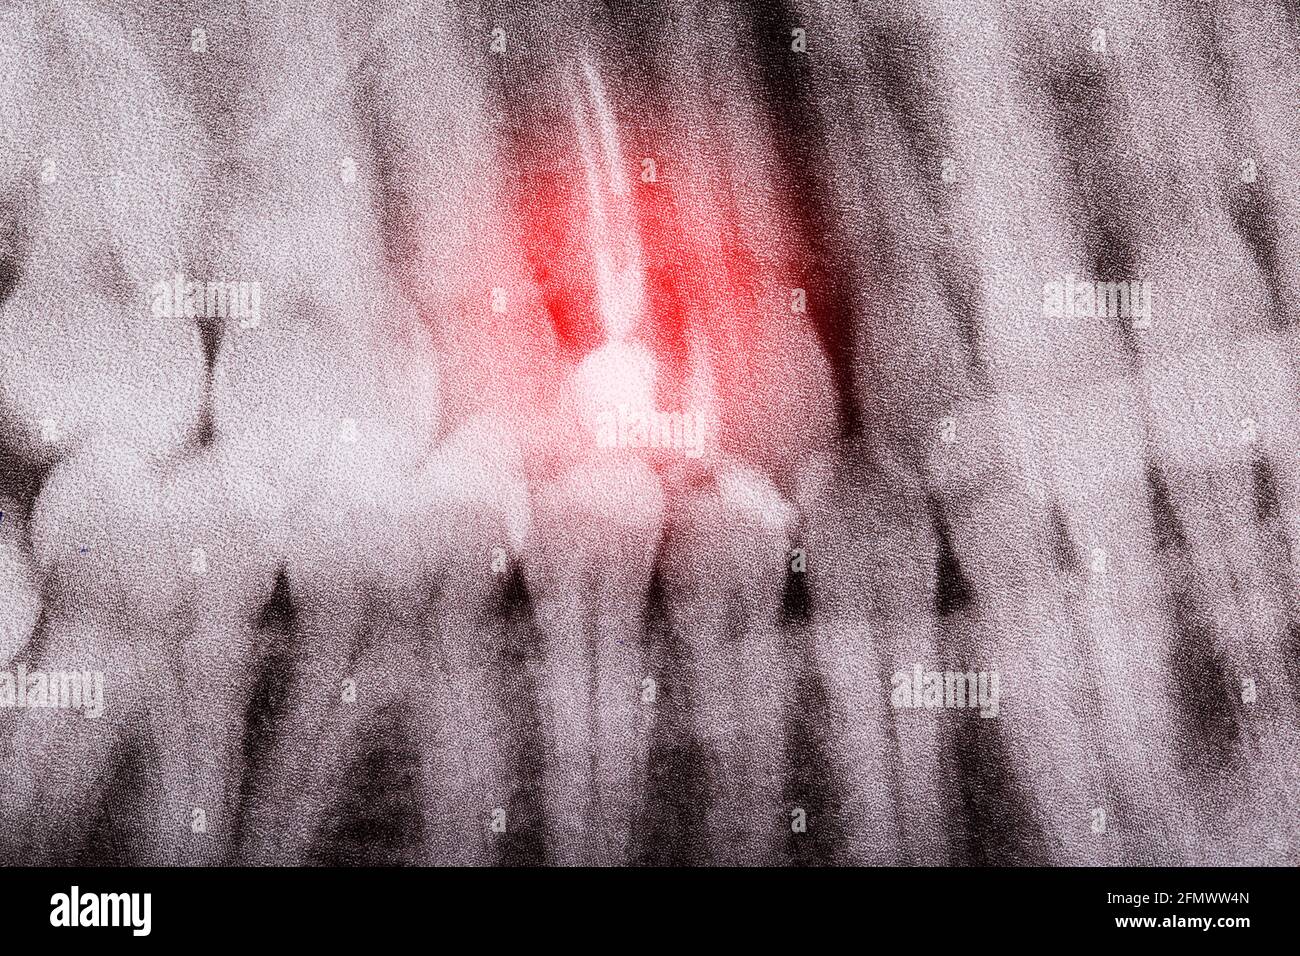 Pulpite dentaire sur une radiographie dentaire, macro. Inflammation des canaux racinaires et des nerfs. Parodontite chronique Banque D'Images